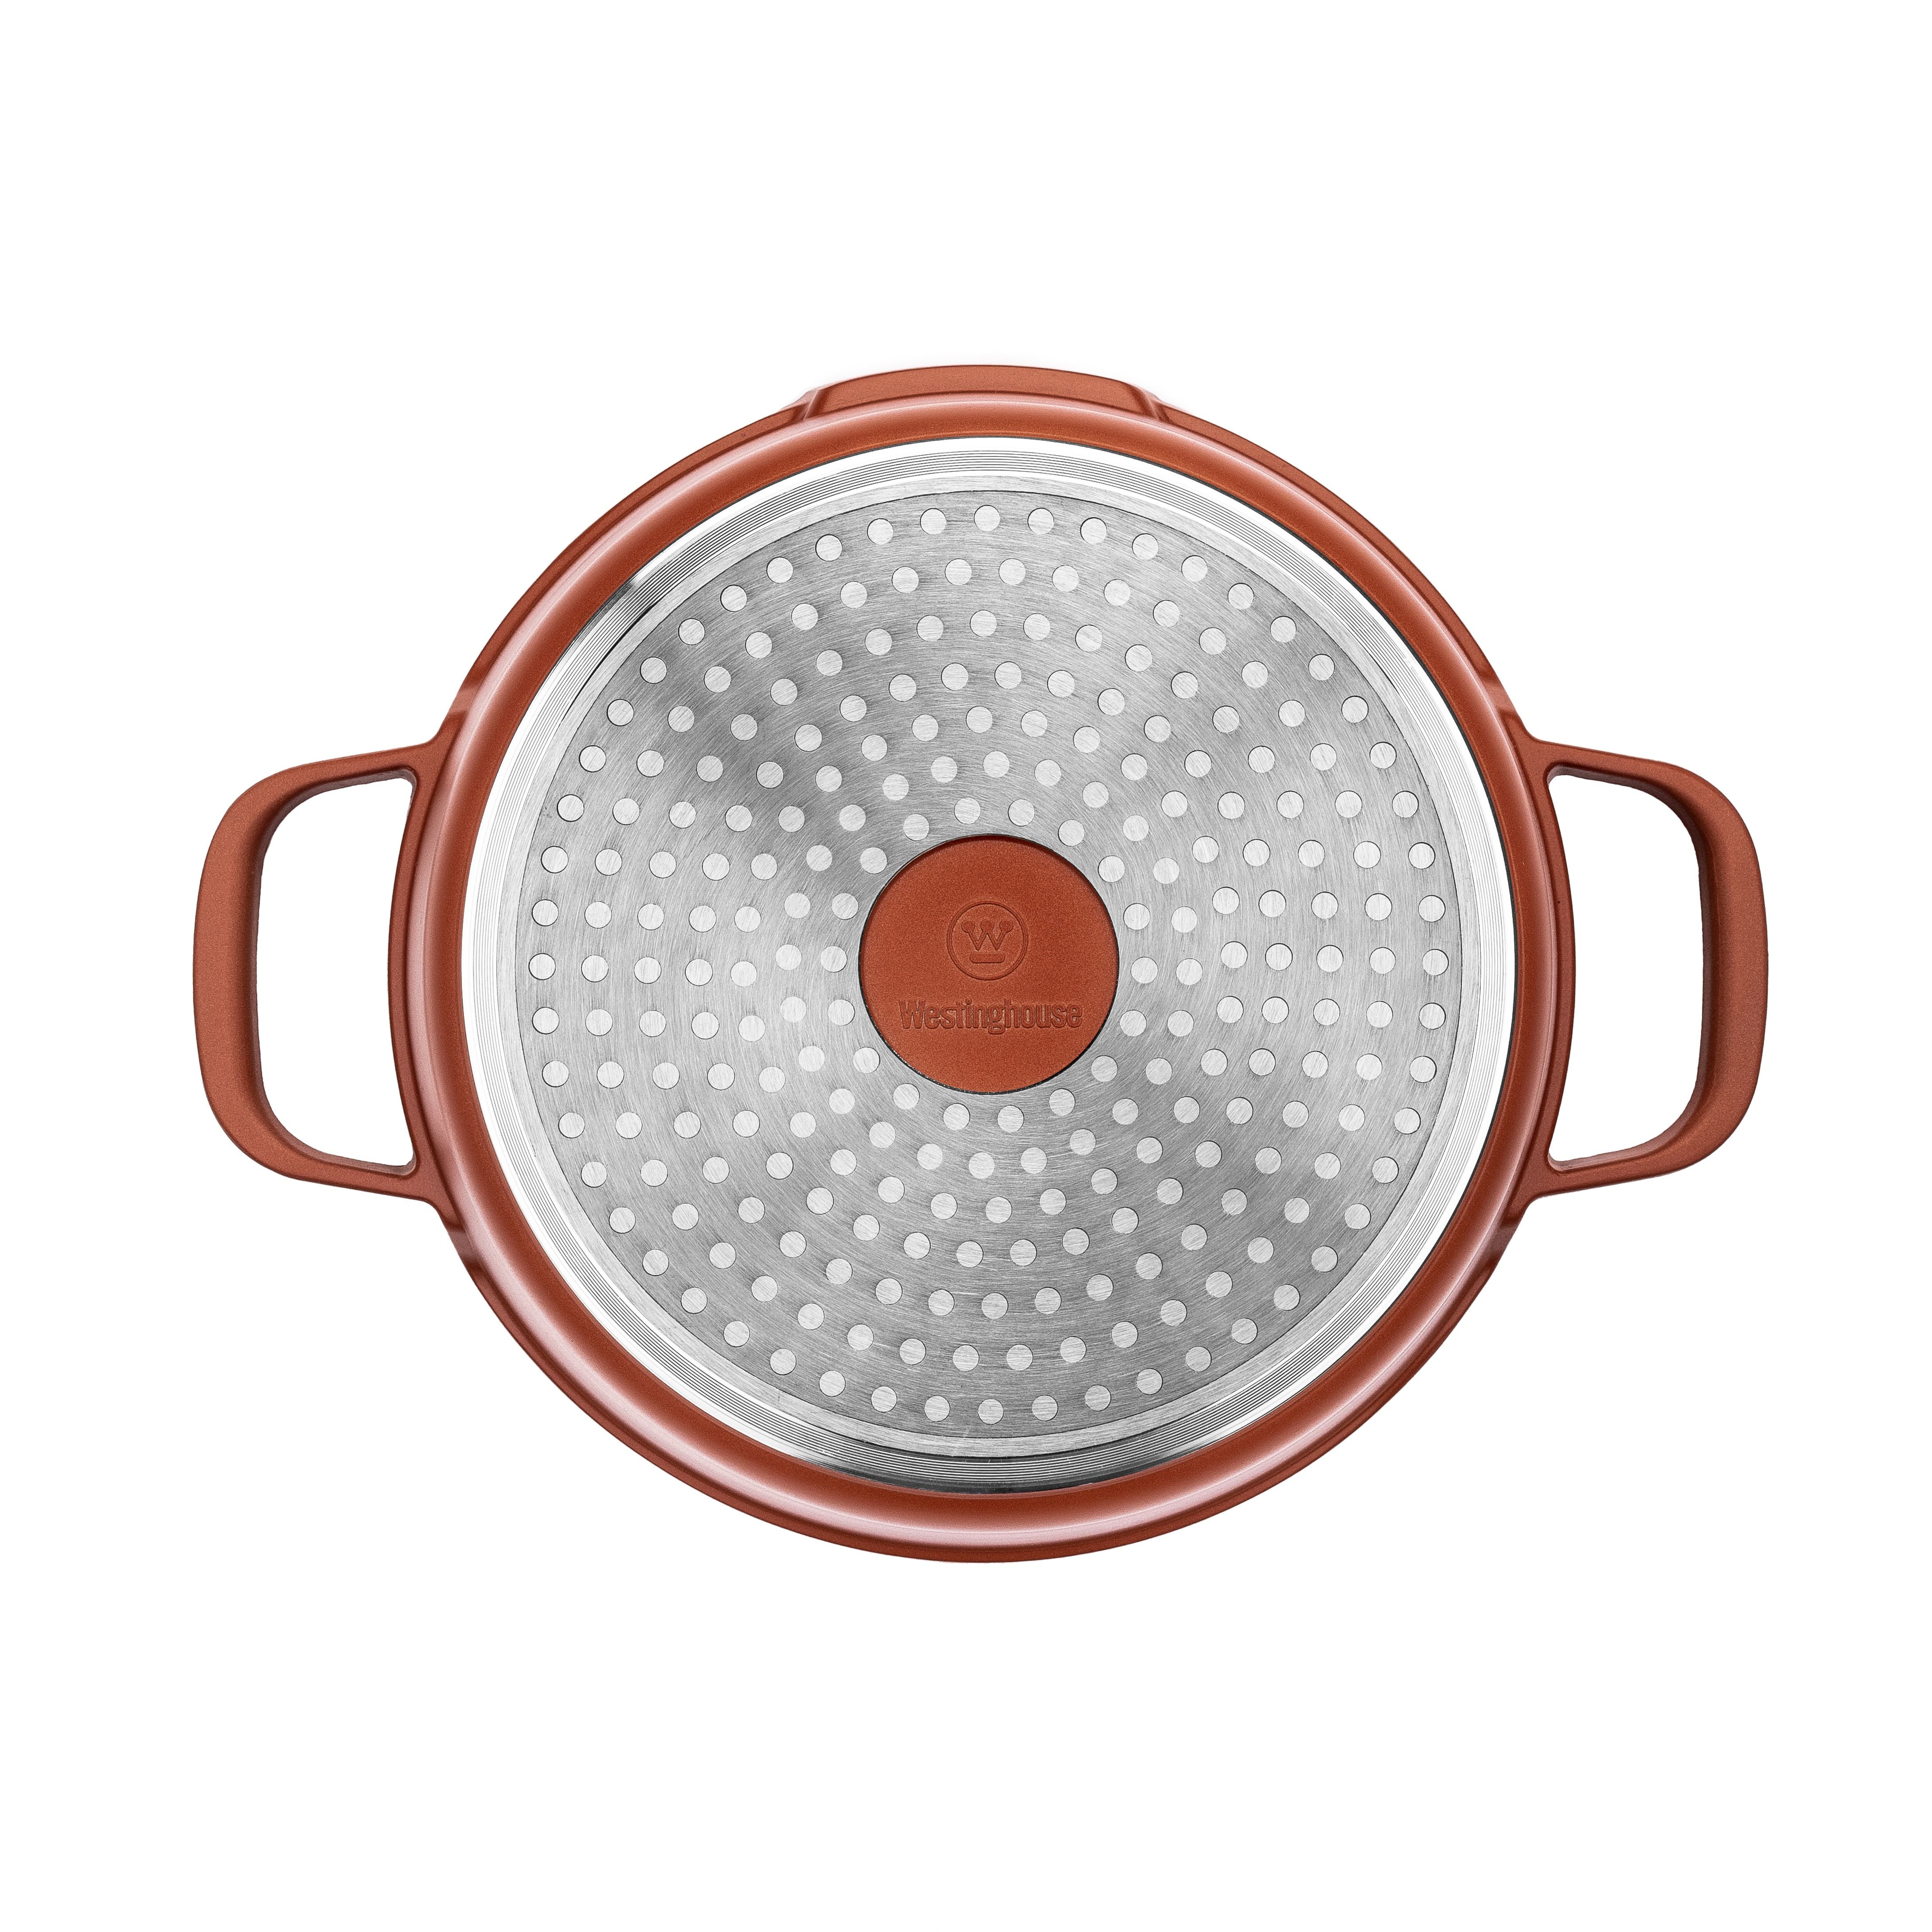 Cocotte / faitout / marmite Westinghouse performance series faitout  induction - 28cm - tout feux, passe au four et au lave-vaisselle - rouge